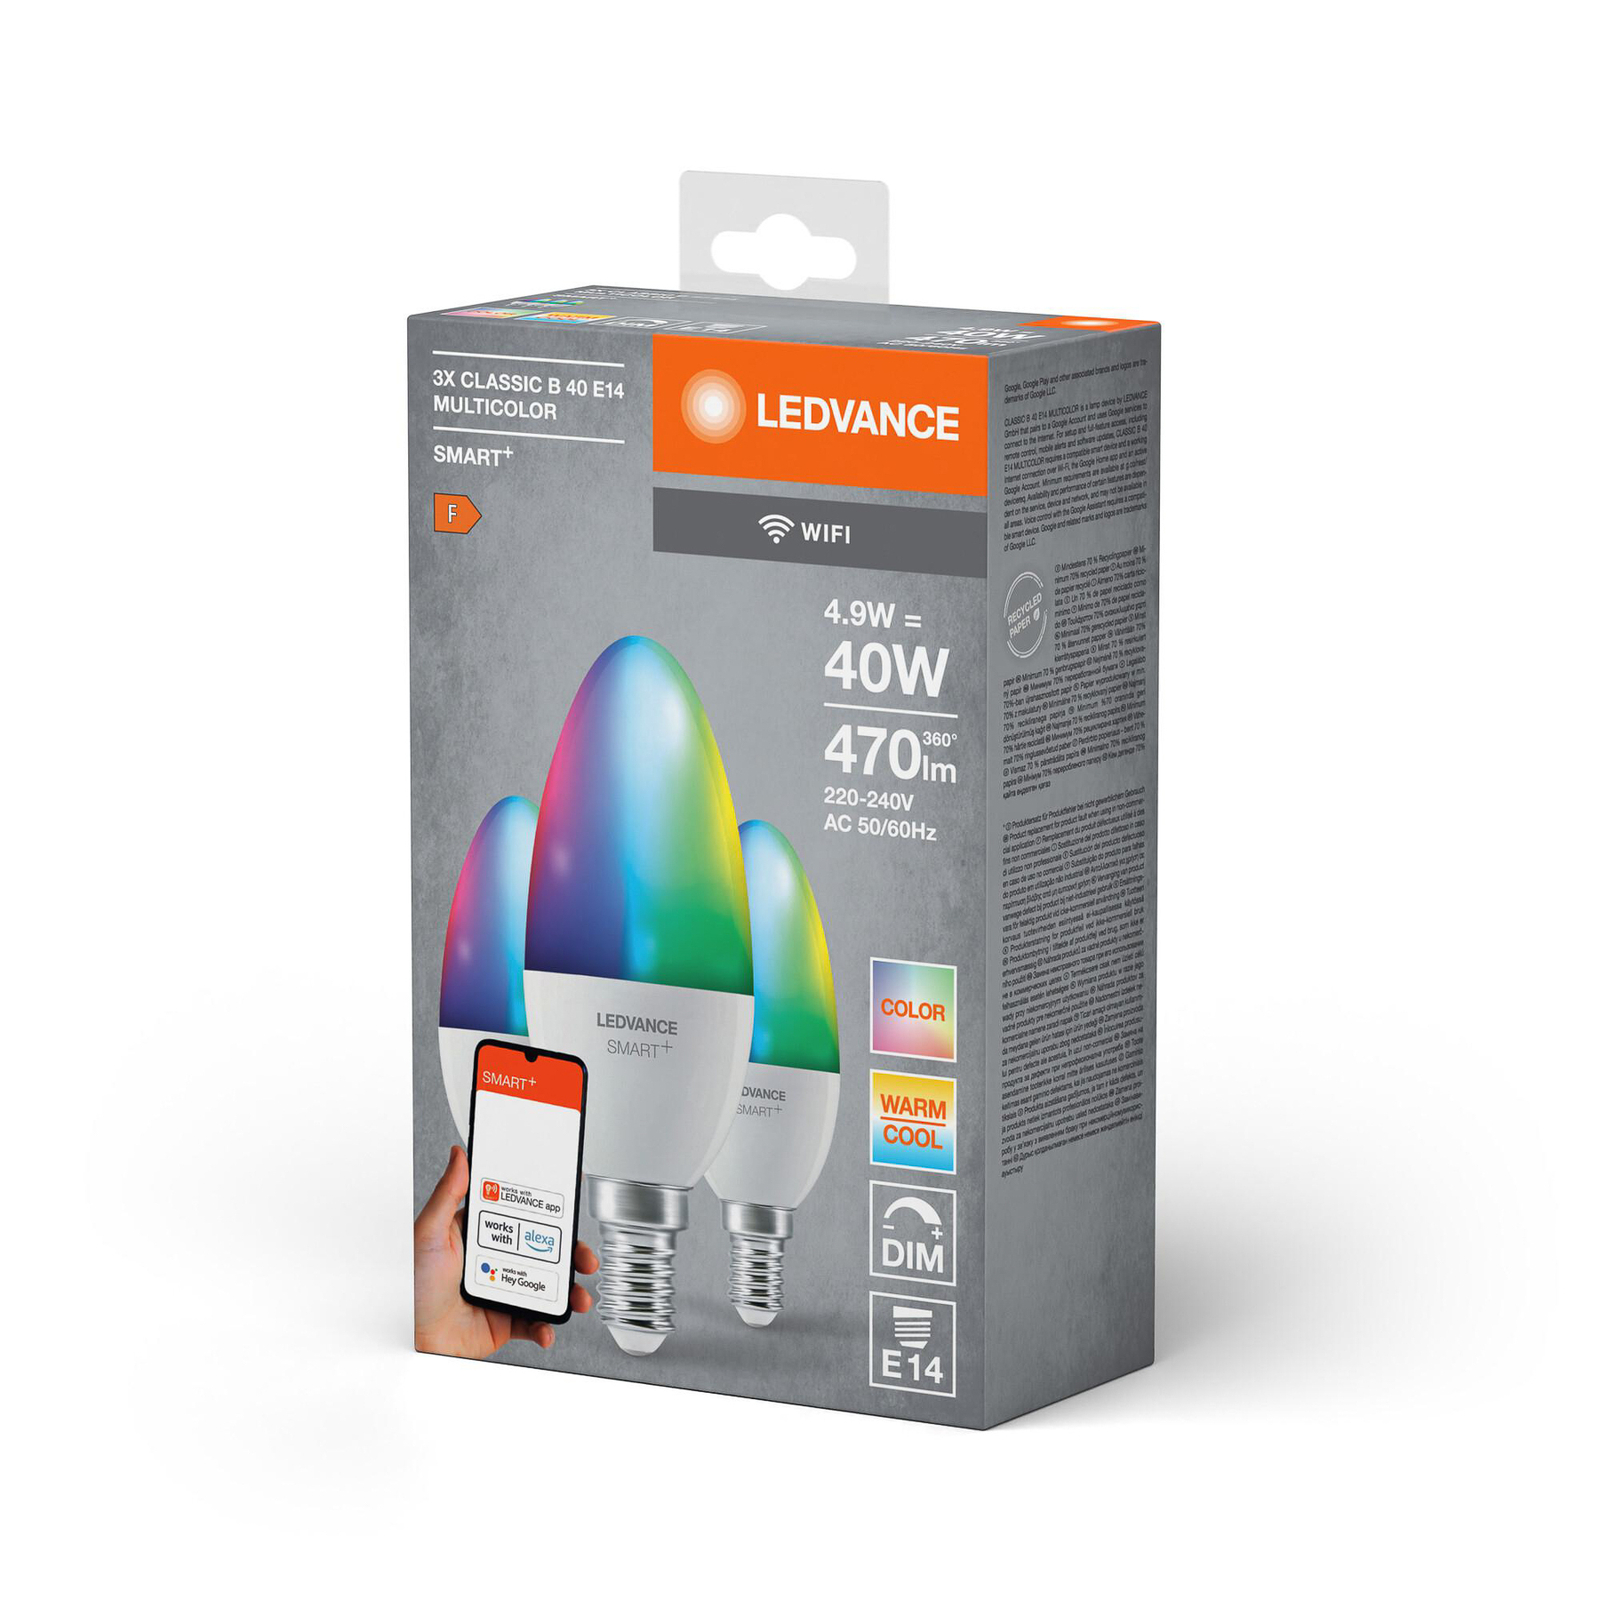 LEDVANCE SMART+ LED, vela, E14, 4,9 W, CCT, RGB, WiFi, 3 unidades